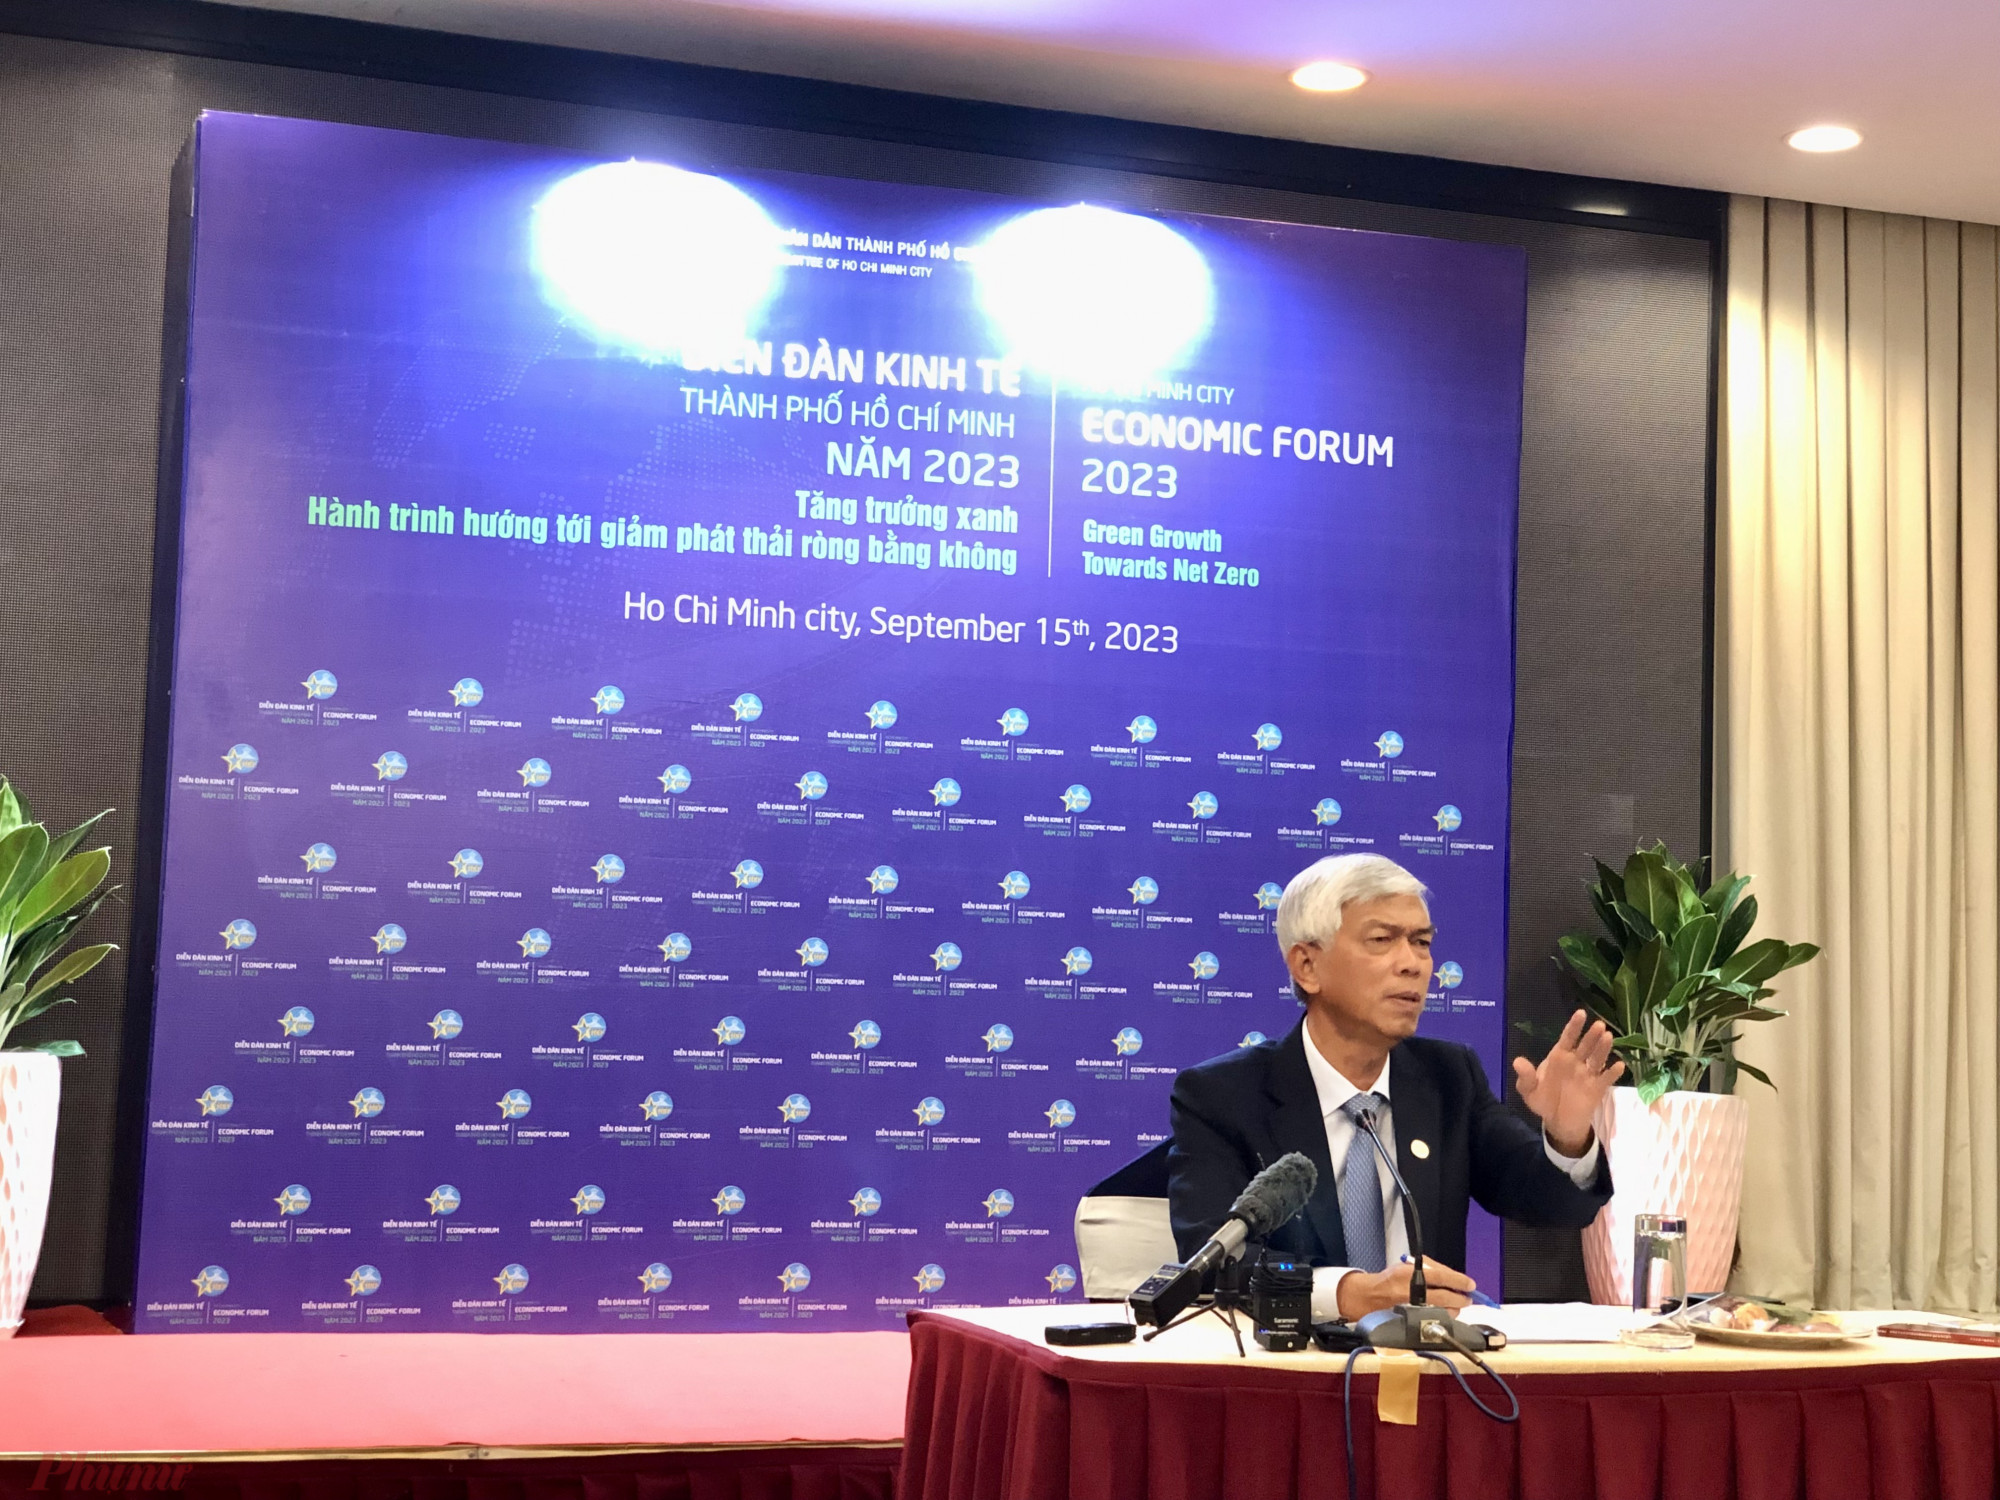 ông Võ Văn Hoan đánh giá TPHCM có thể thực hiện được mục tiêu tăng trưởng xanh và đây không phải là tham vọng bất khả thi. 